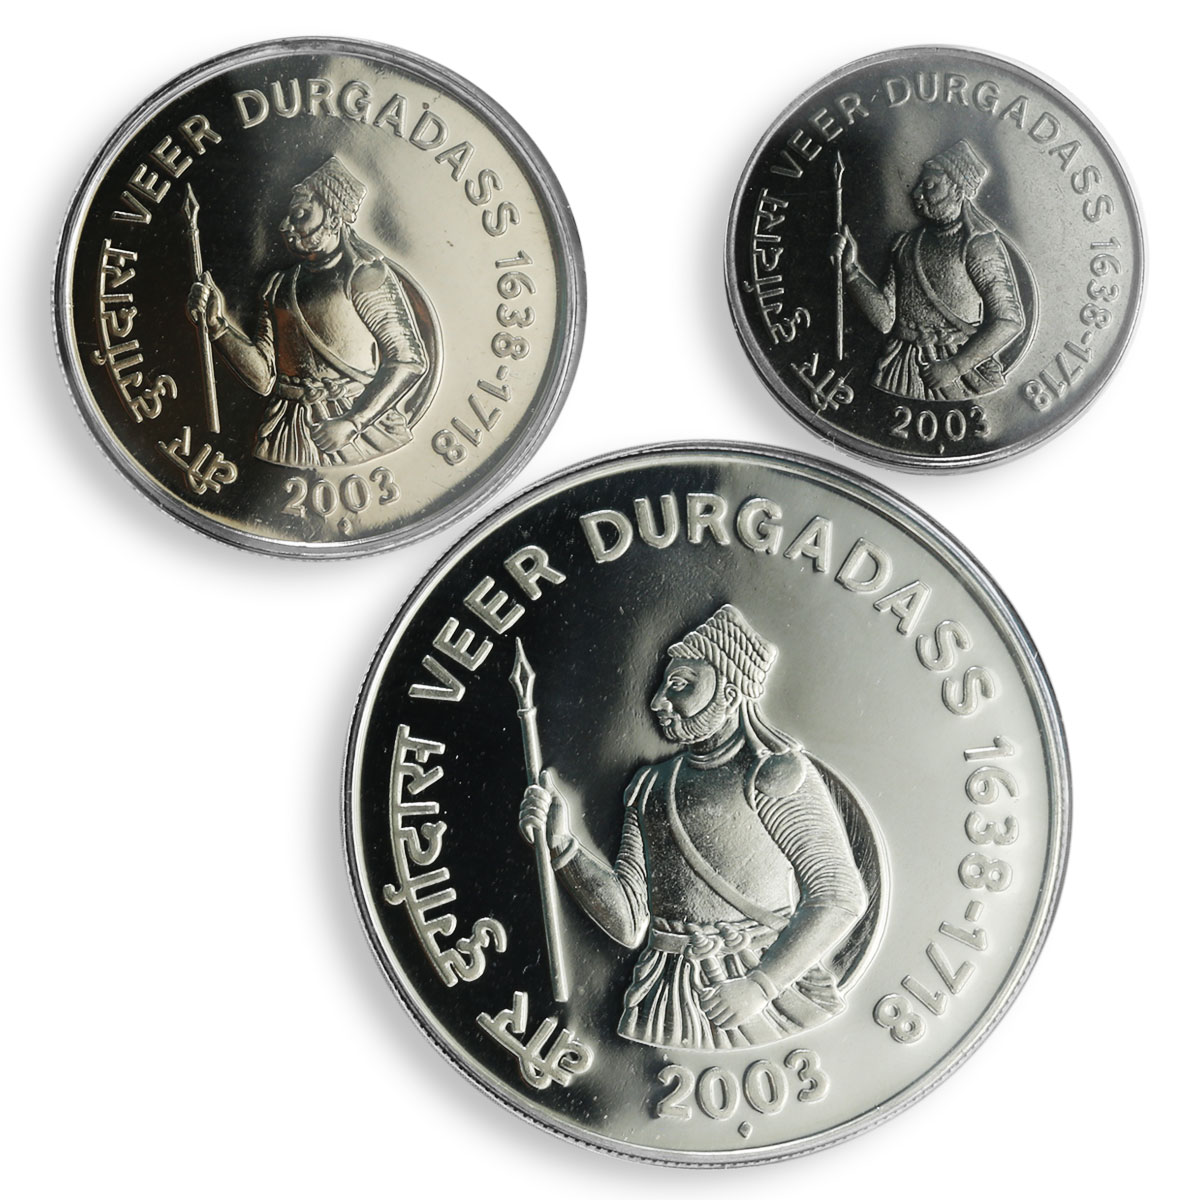 India set of 3 coins Veer Durgadass UNC 2003